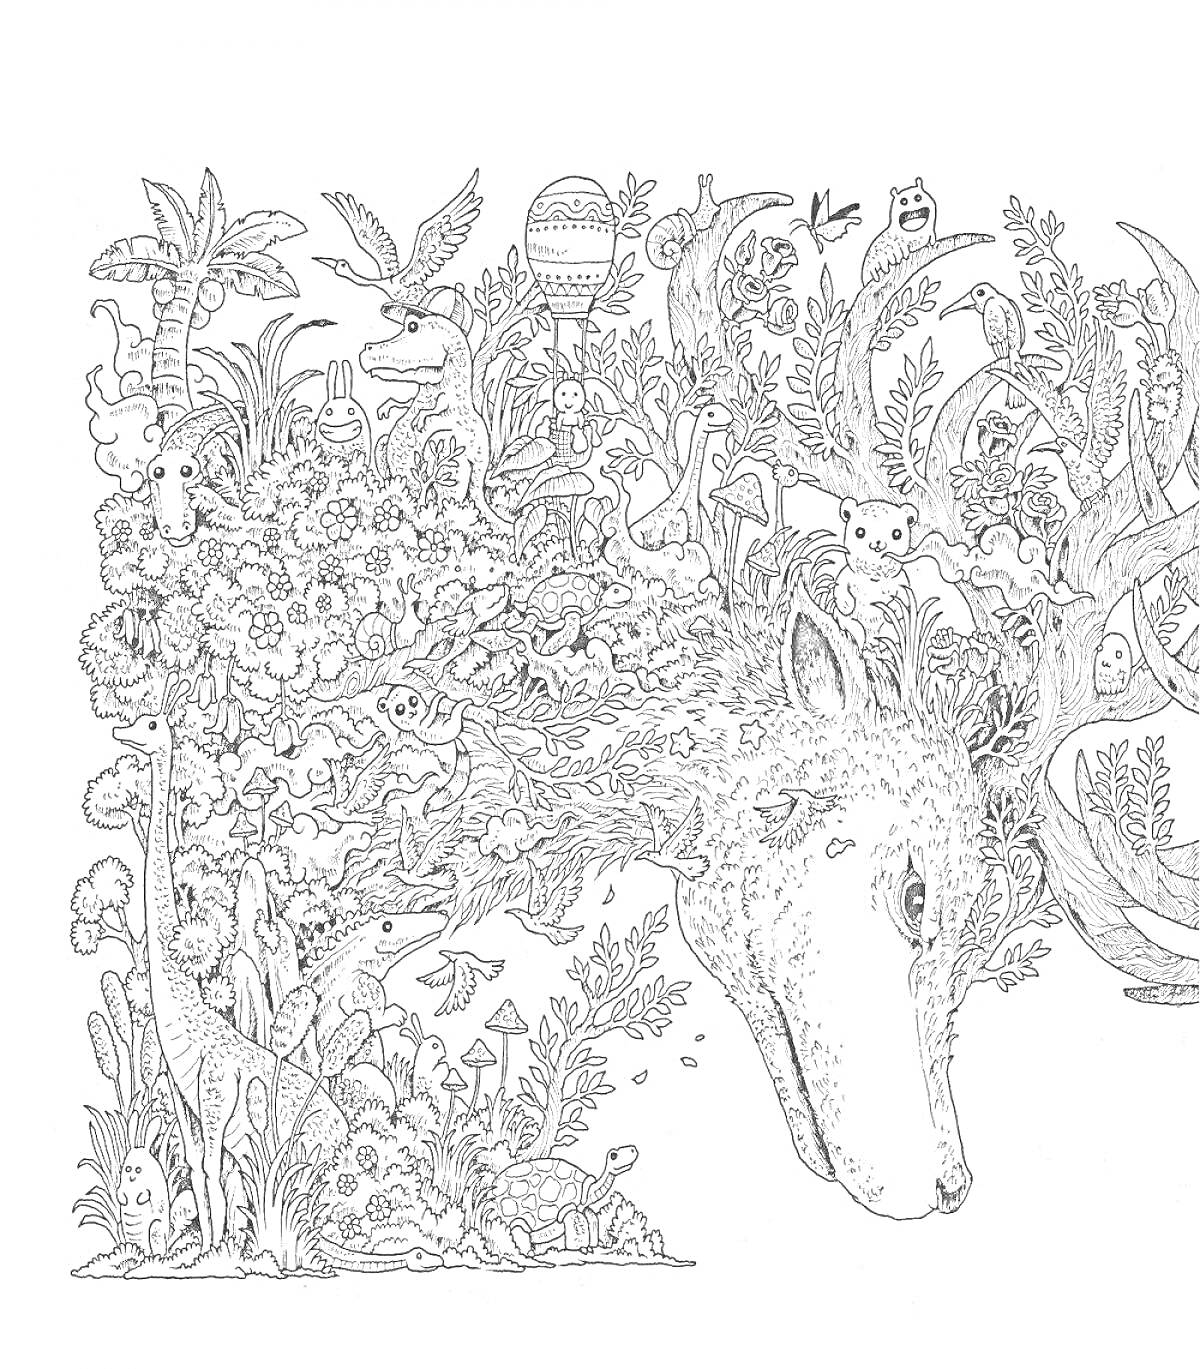 Раскраска Лесная голова оленя с окружающим его природным миром, включая деревья, птиц, цветы, грибы, траву, бабочек и других лесных существ